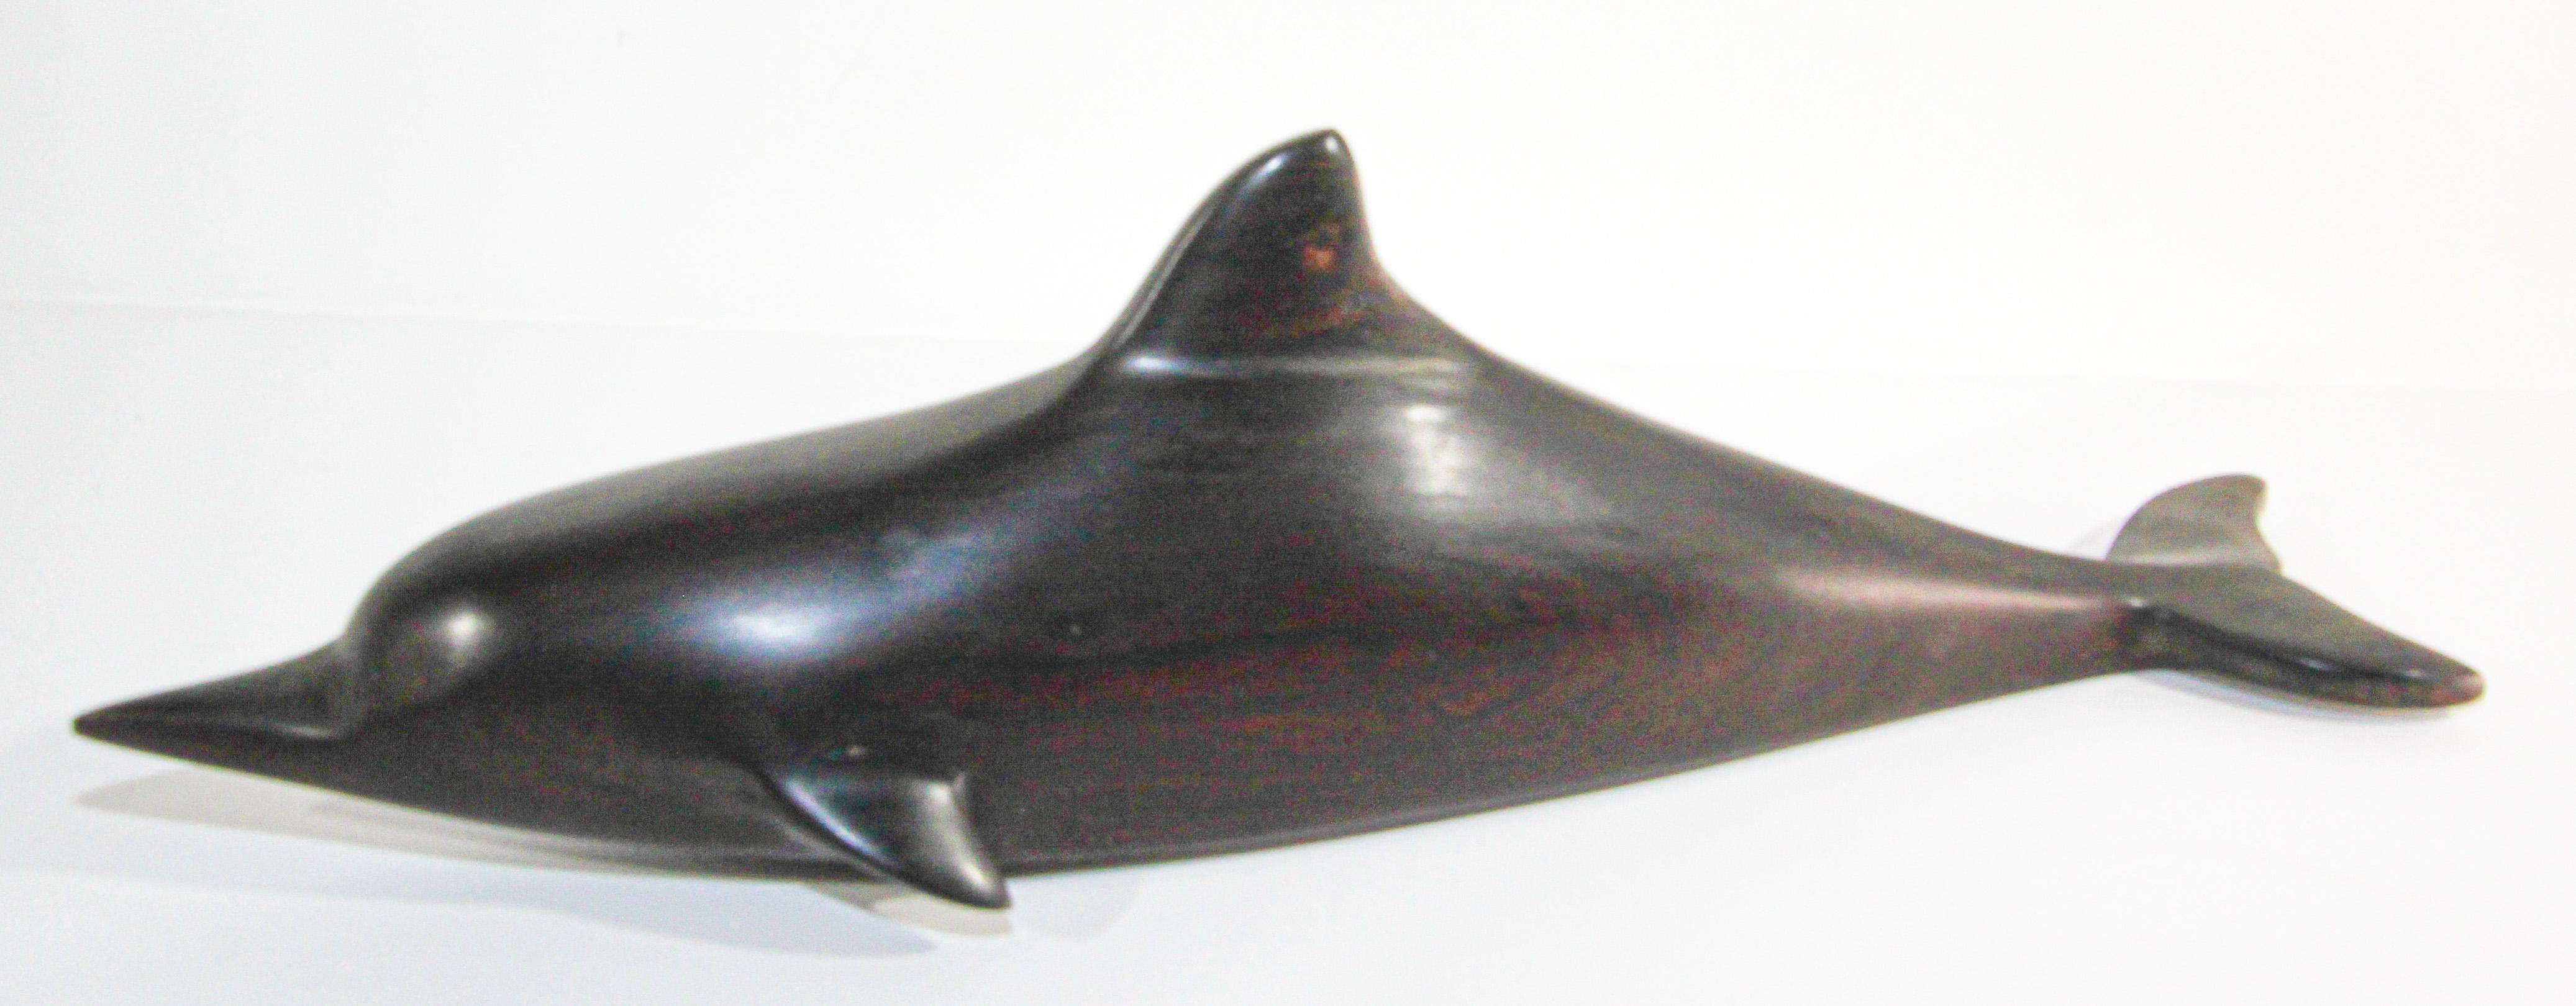 Brasilianische handgeschnitzte Eisenholz-Skulptur eines Wals und eines Hais aus Brasilien.
Handgeschnitzte brasilianische Skulptur, handgefertigt und mit erstaunlichen Details aus einem der harten natürlichen Eisenholze der Erde. 
Es handelt sich